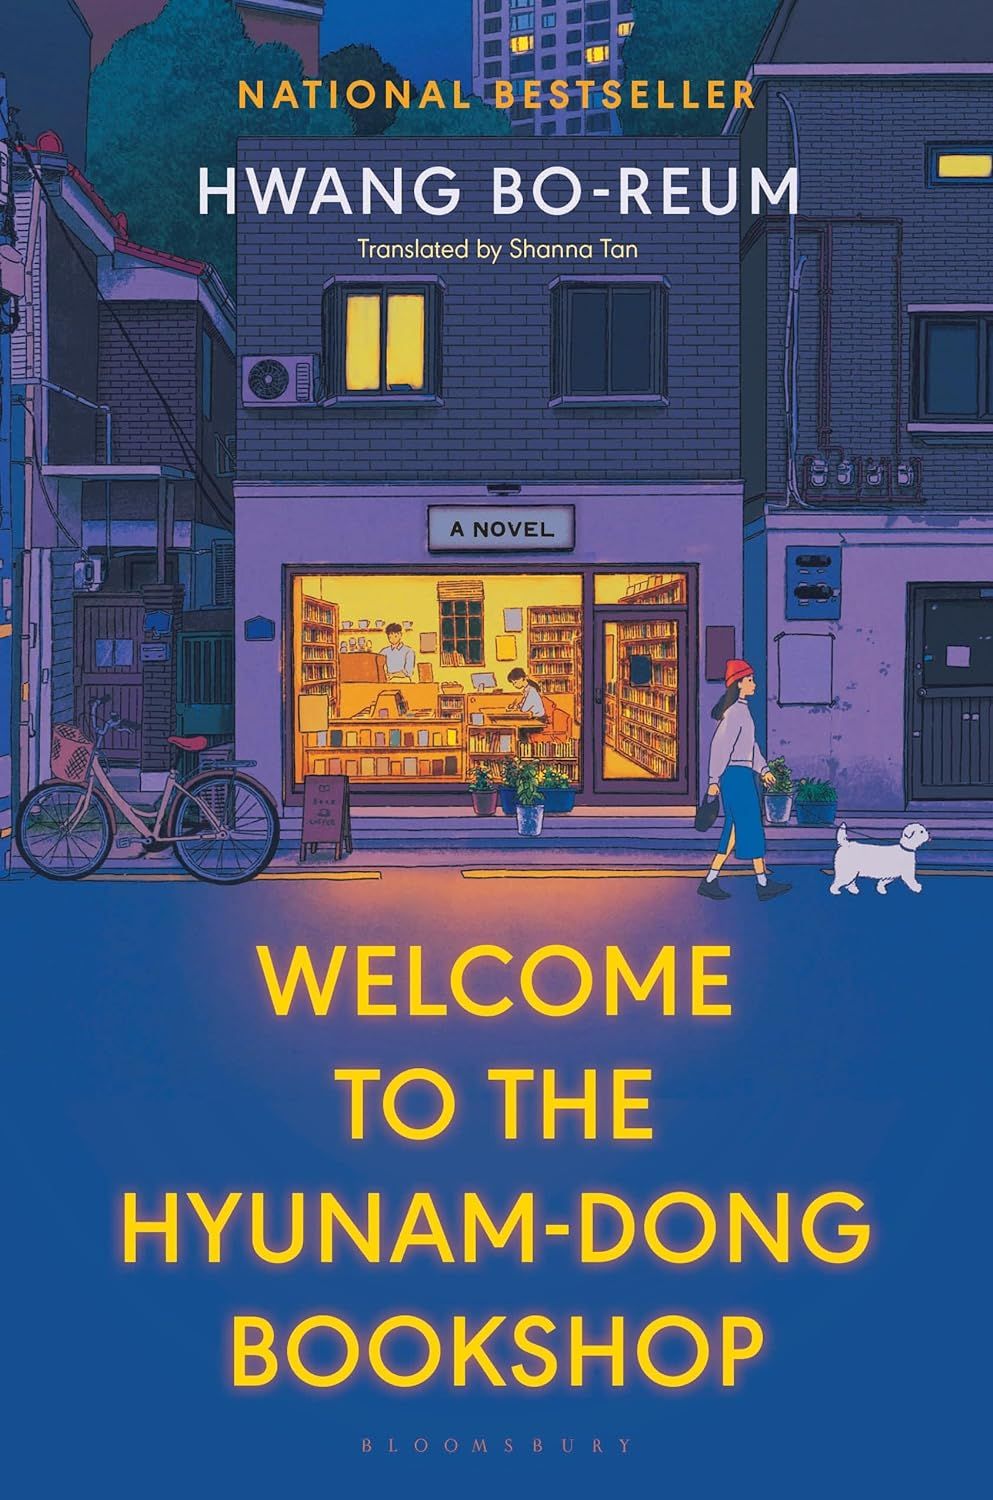 Bienvenue à la librairie Hyunam-dong de Hwang Bo-reum, traduit par Shanna Tan - couverture du livre